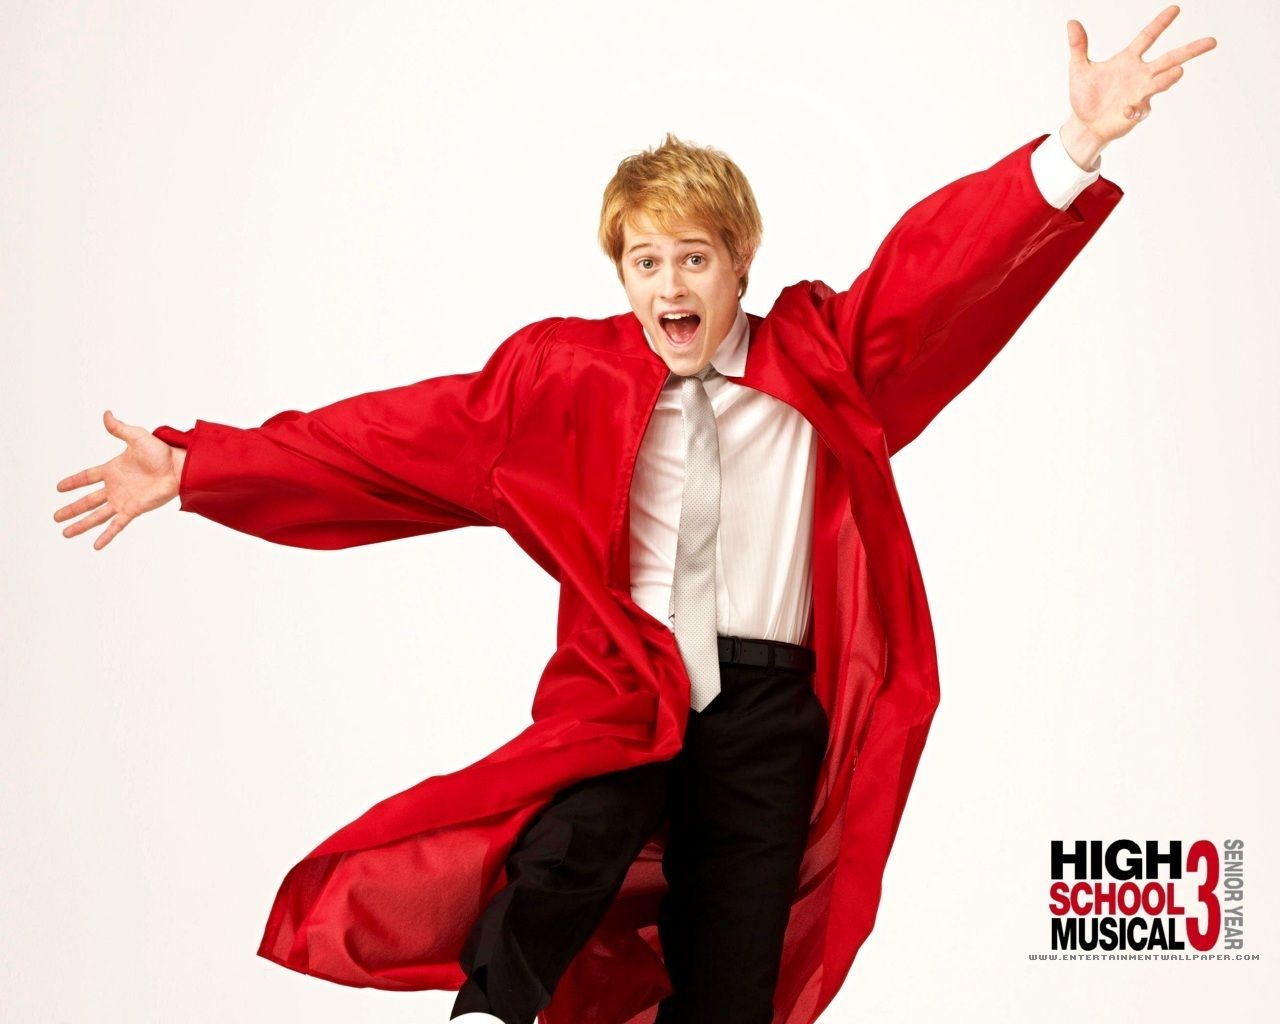 "Hoje em dia, não sei se faria Ryan em 'High School Musical'", diz Lucas Grabeel